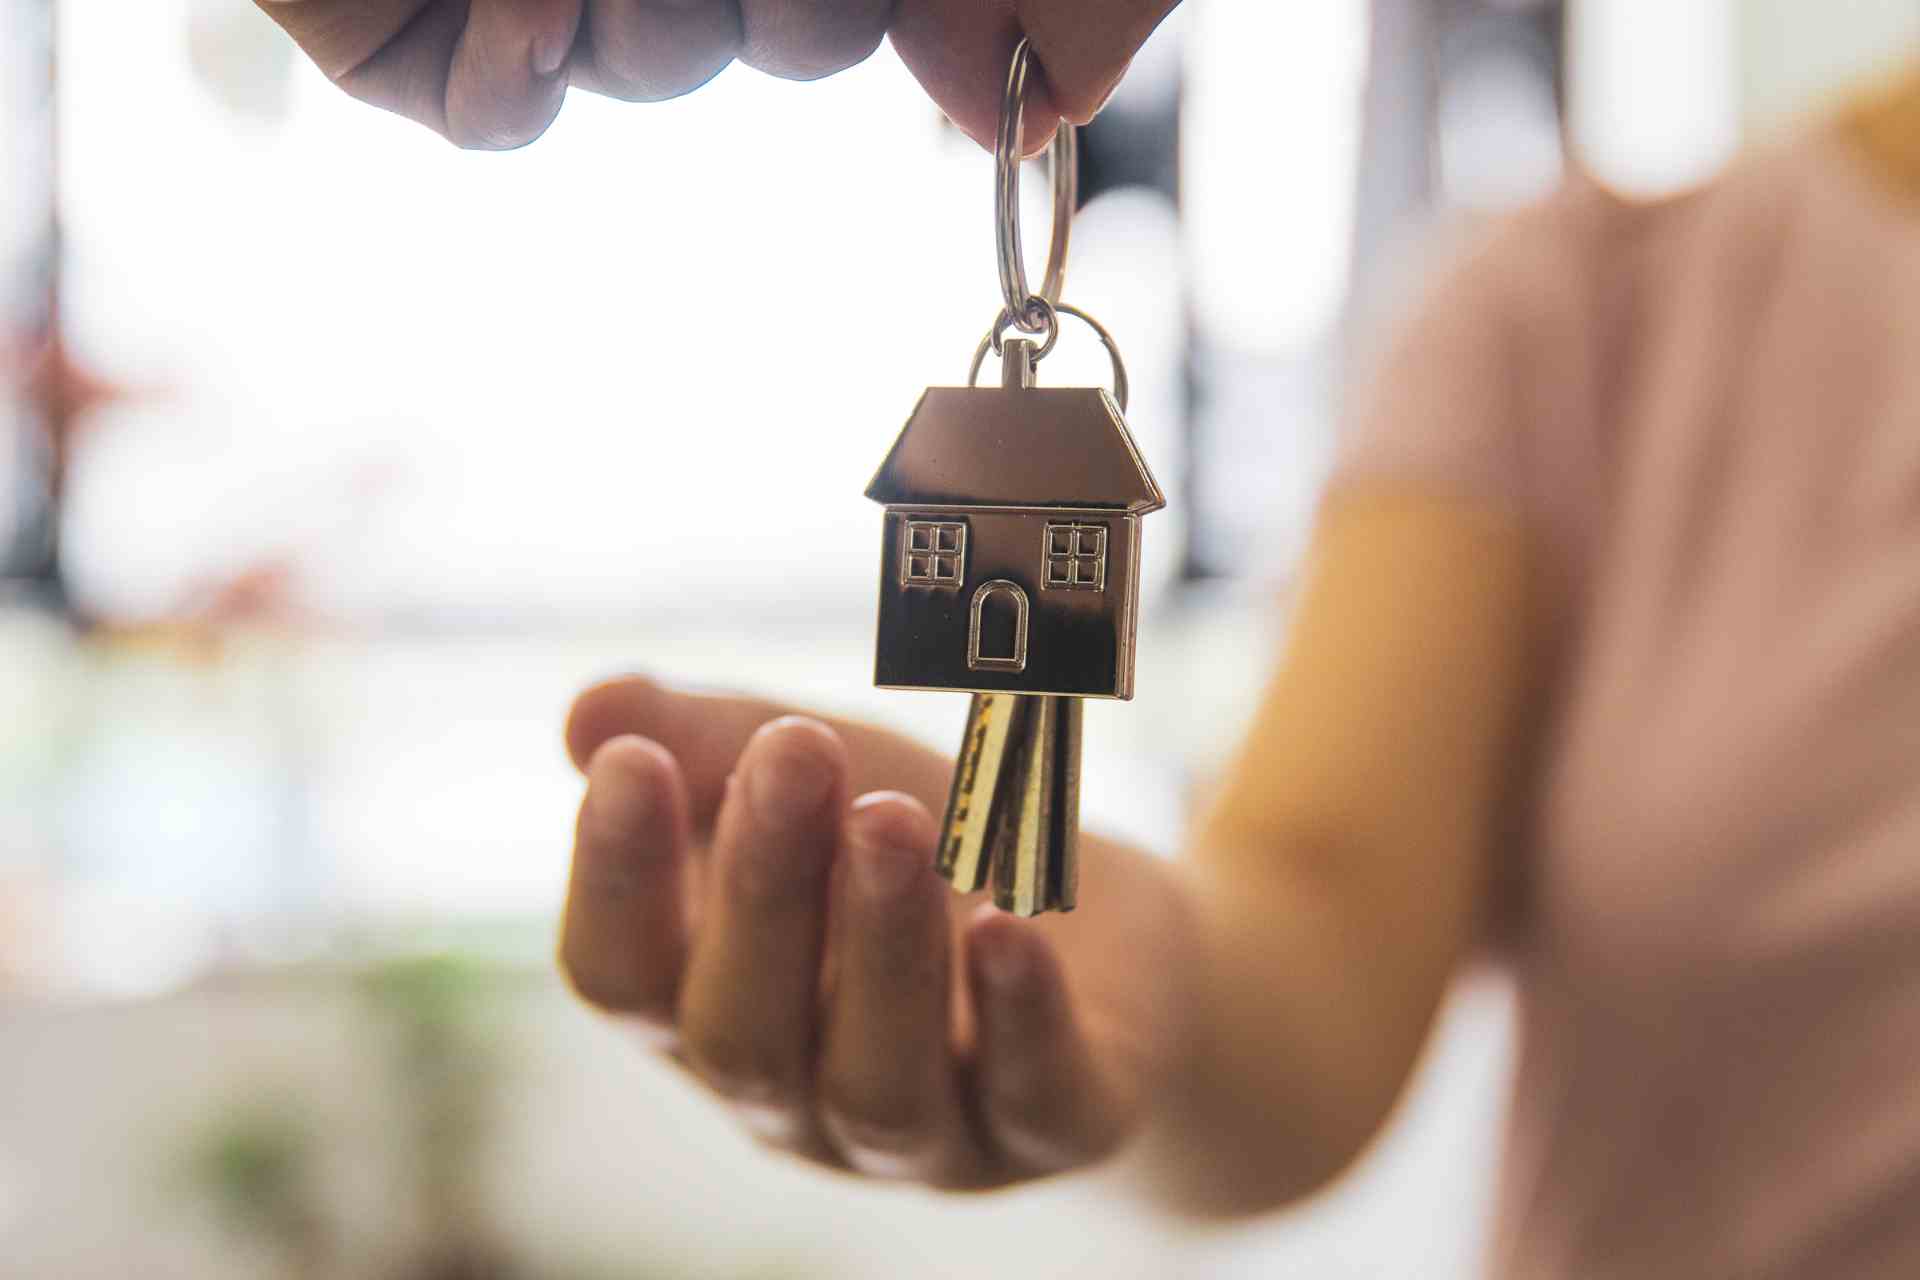 ماذا تفعل عند شراء منزل جديد ؟ نصائح عقارية